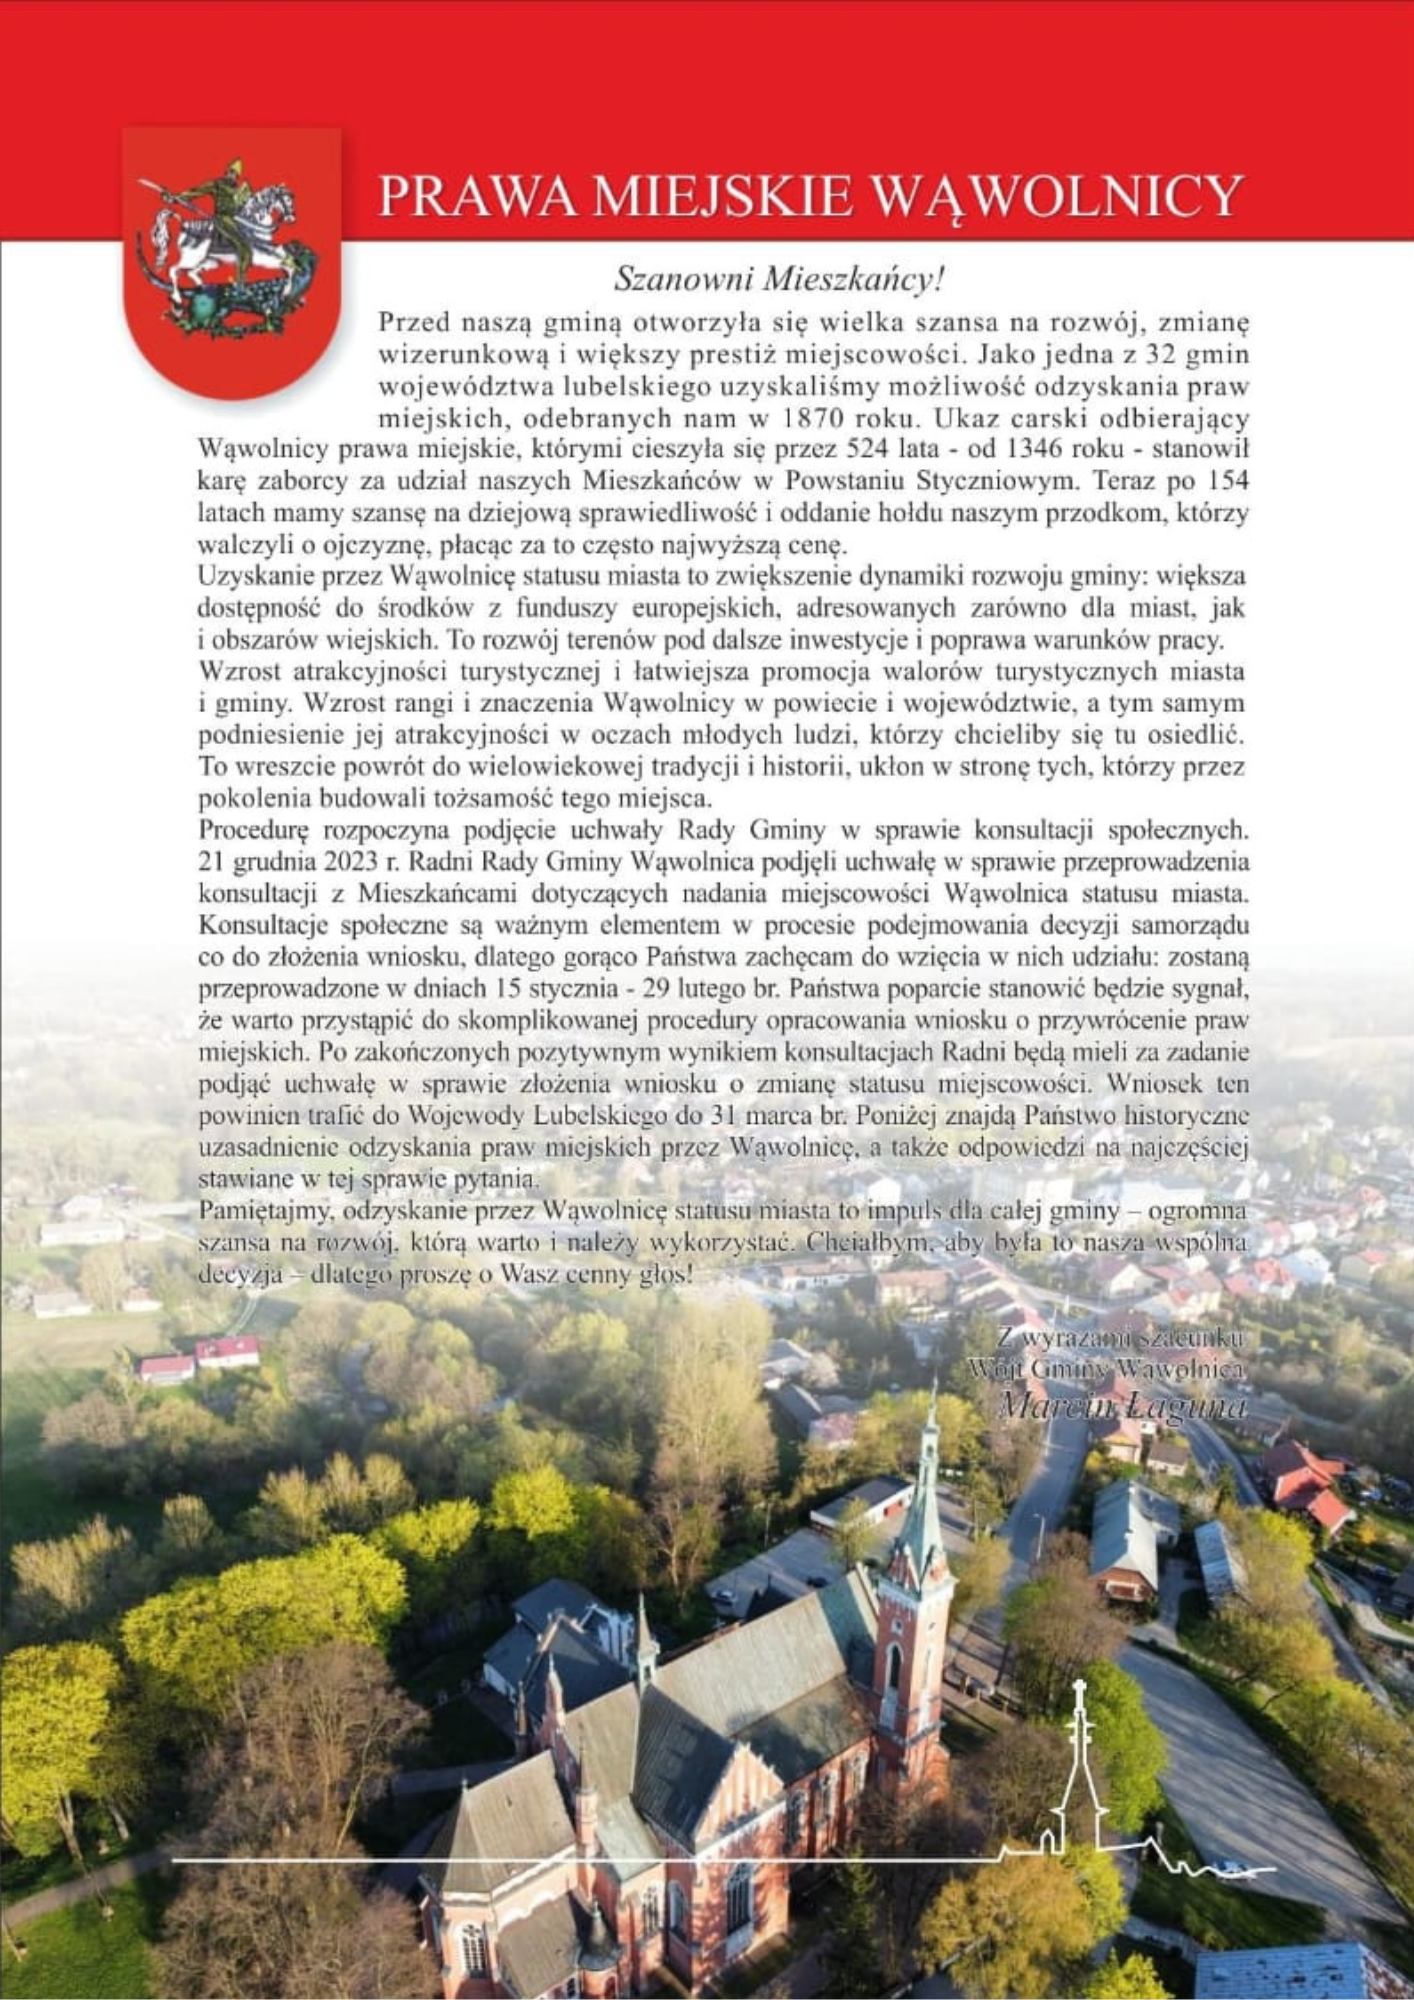 Zdjęcie przedstawia plakat z tekstem w języku polskim i grafiką. W dolnej części znajduje się zdjęcie krajobrazu miejskiego z budynkami i drzewami, a powyżej czerwony pasek z logotypem.